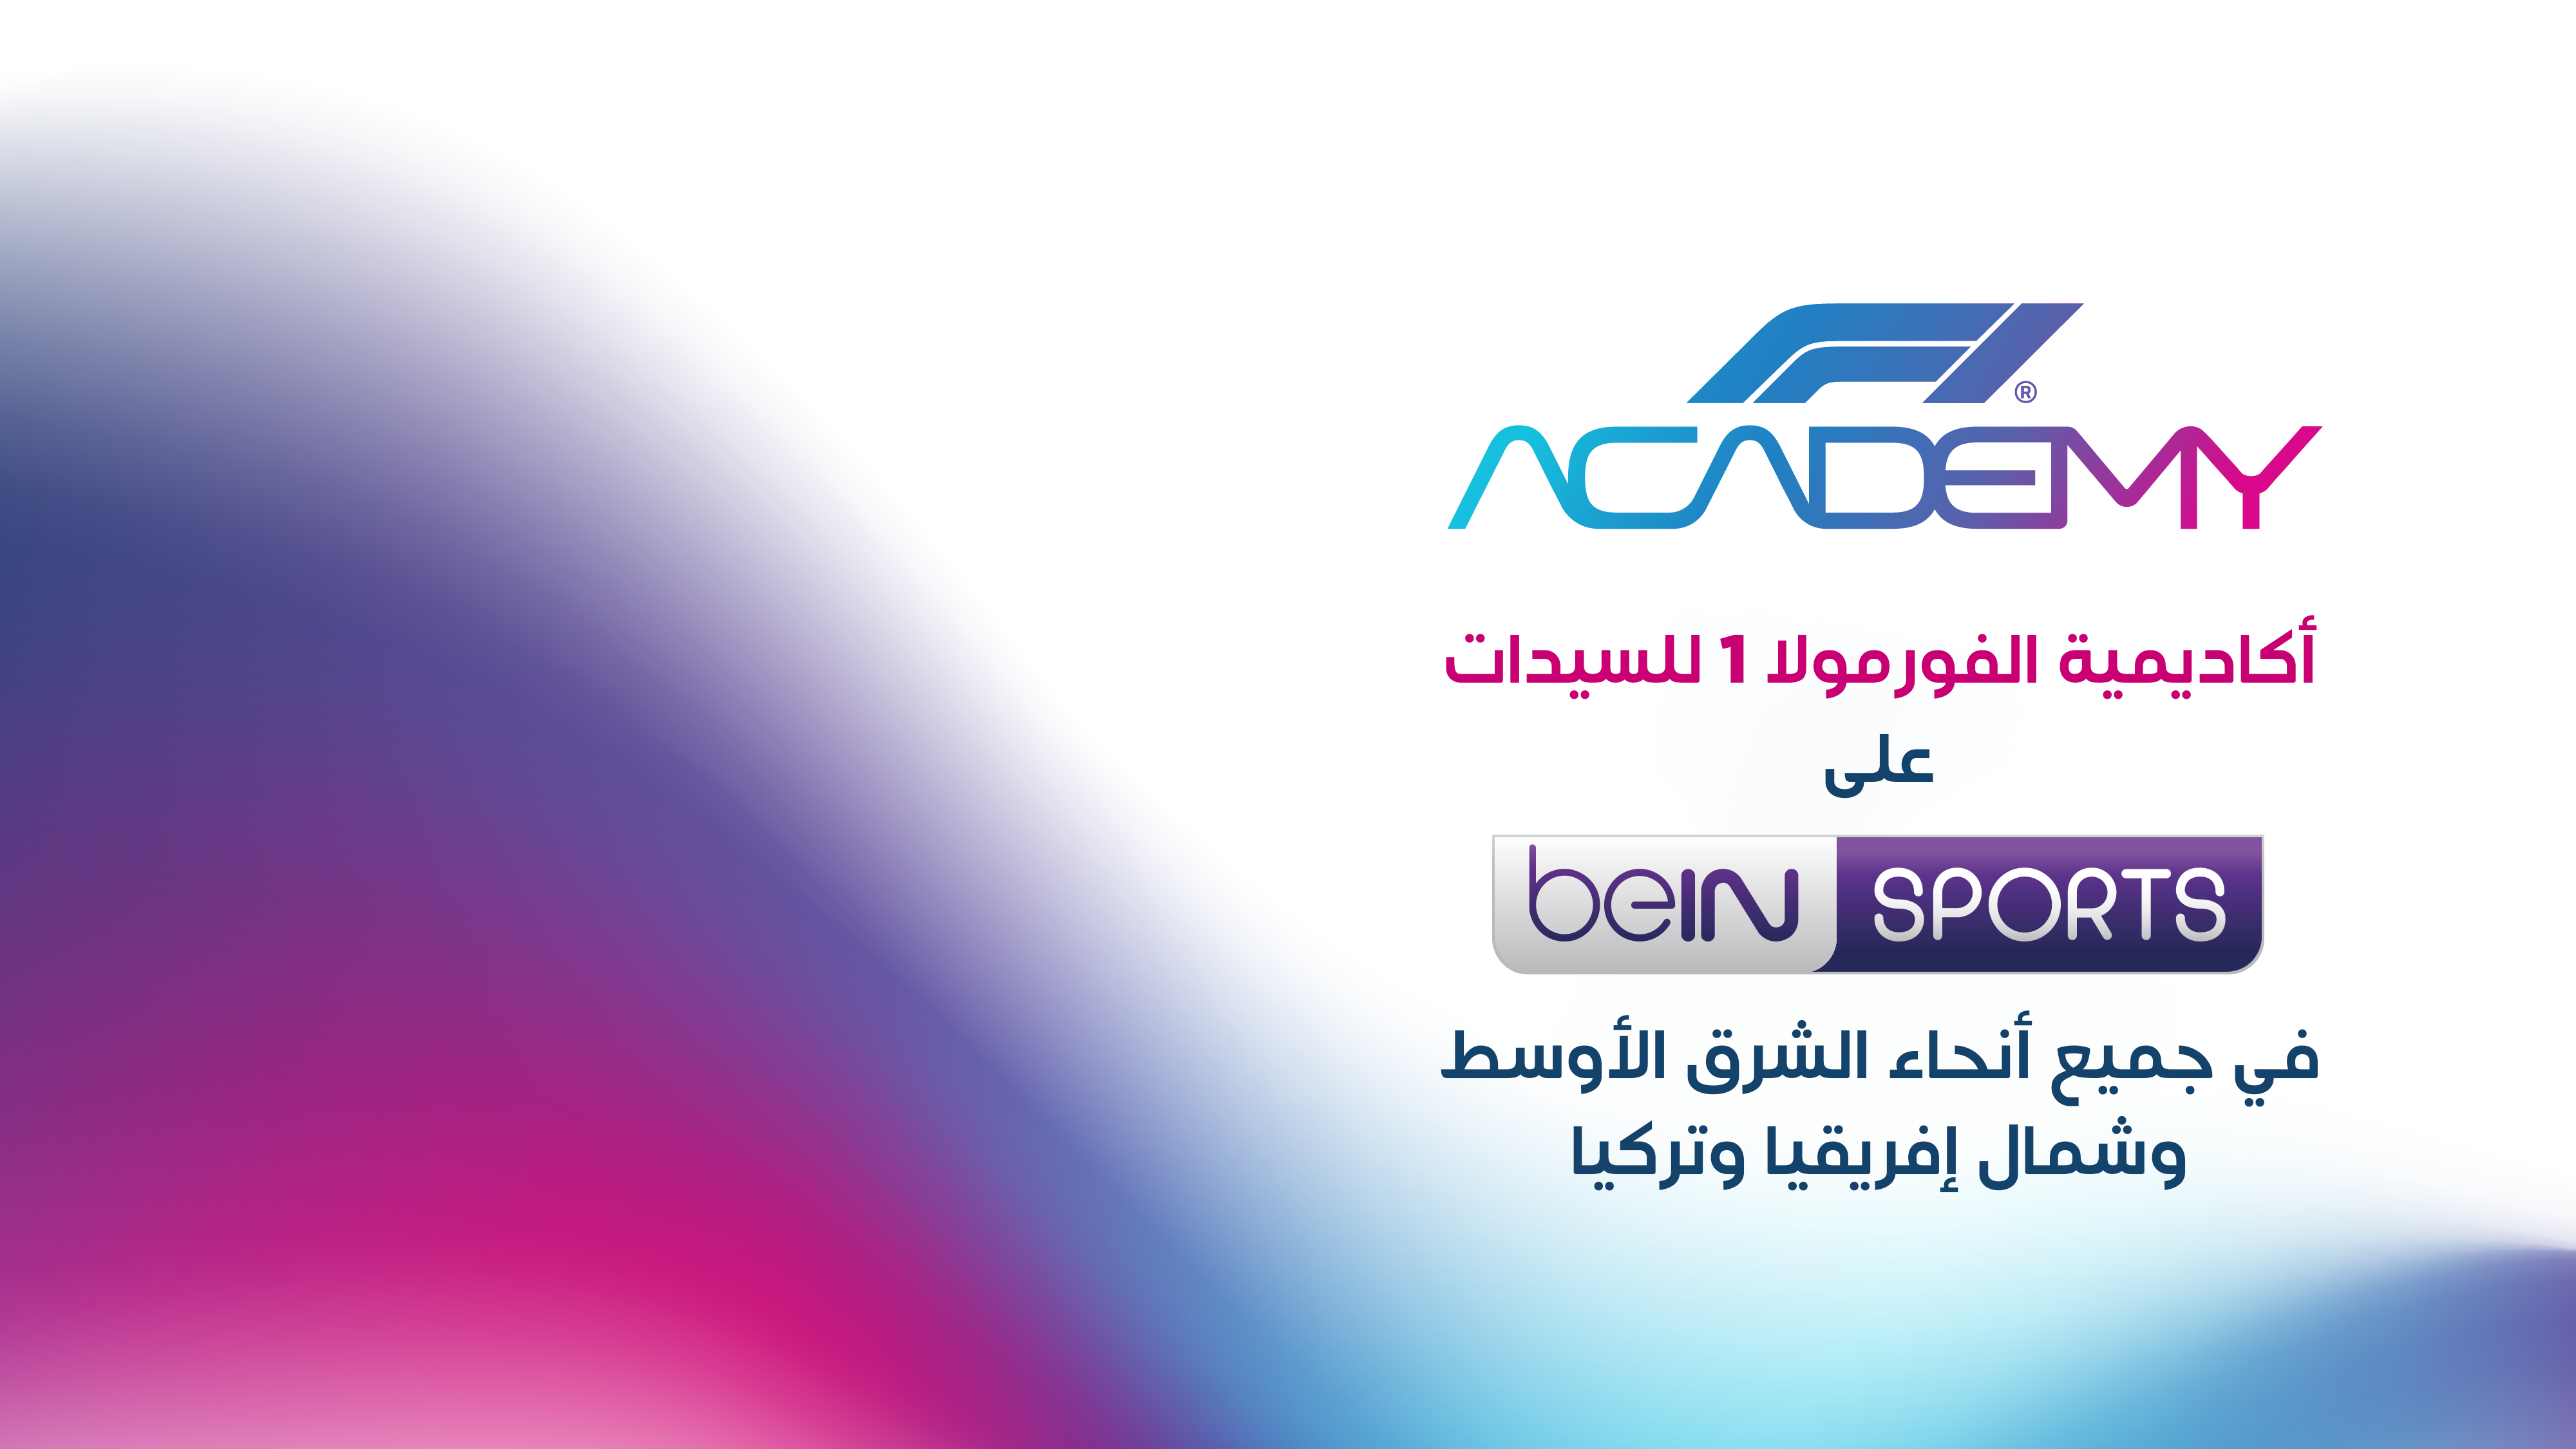 مجموعة beIN الإعلامية تستحوذ على حقوق بث سباقات أكاديمية الفورمولا 1 للسيدات في 25 دولة  